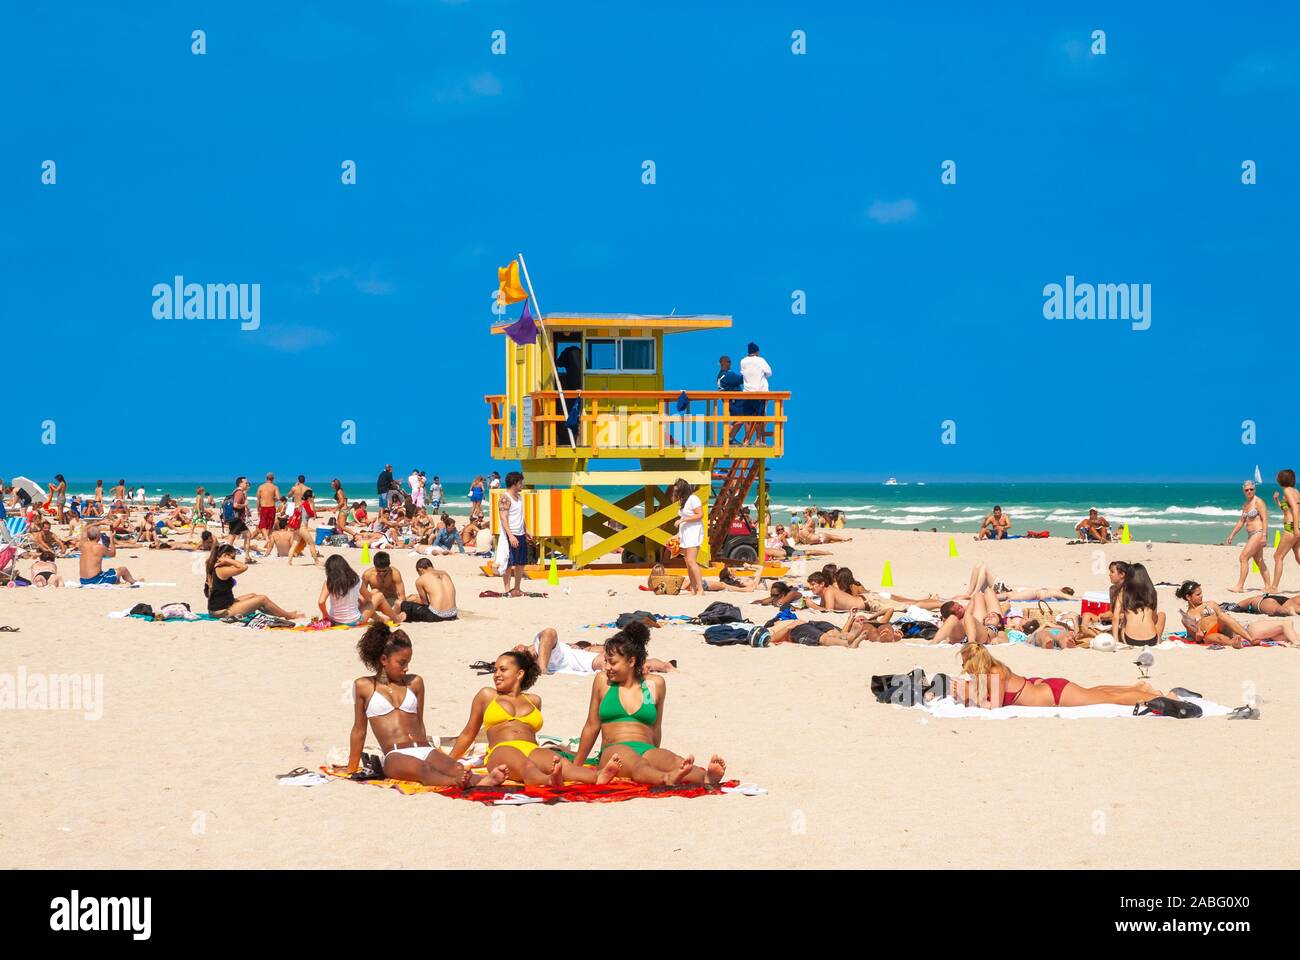 South Beach, Miami, Florida, USA Stock Photo